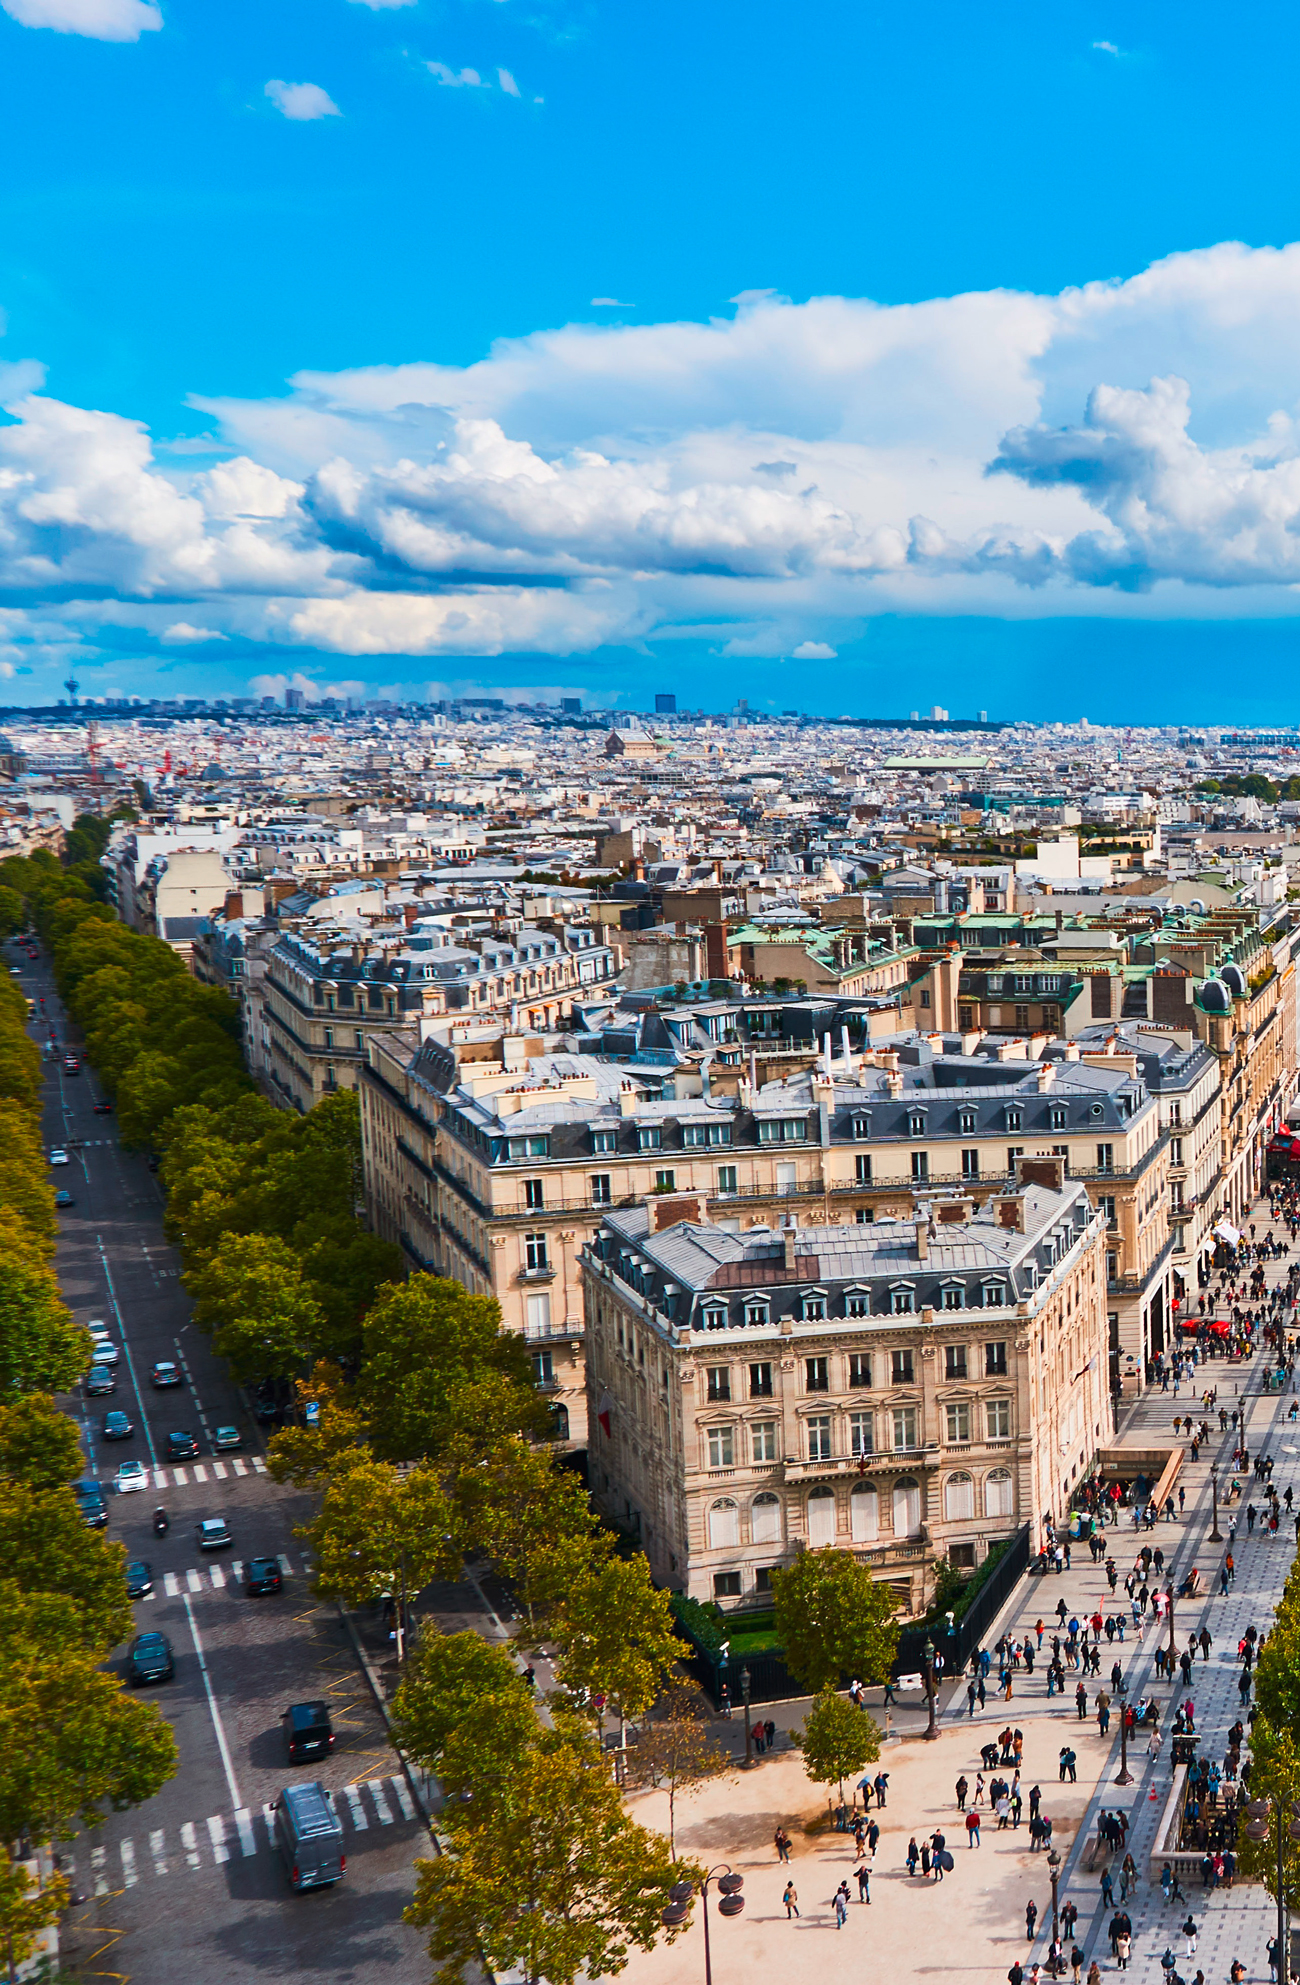 15-Minuten-Stadt Paris - Verkehrs- und Begrünungsmaßnahmen